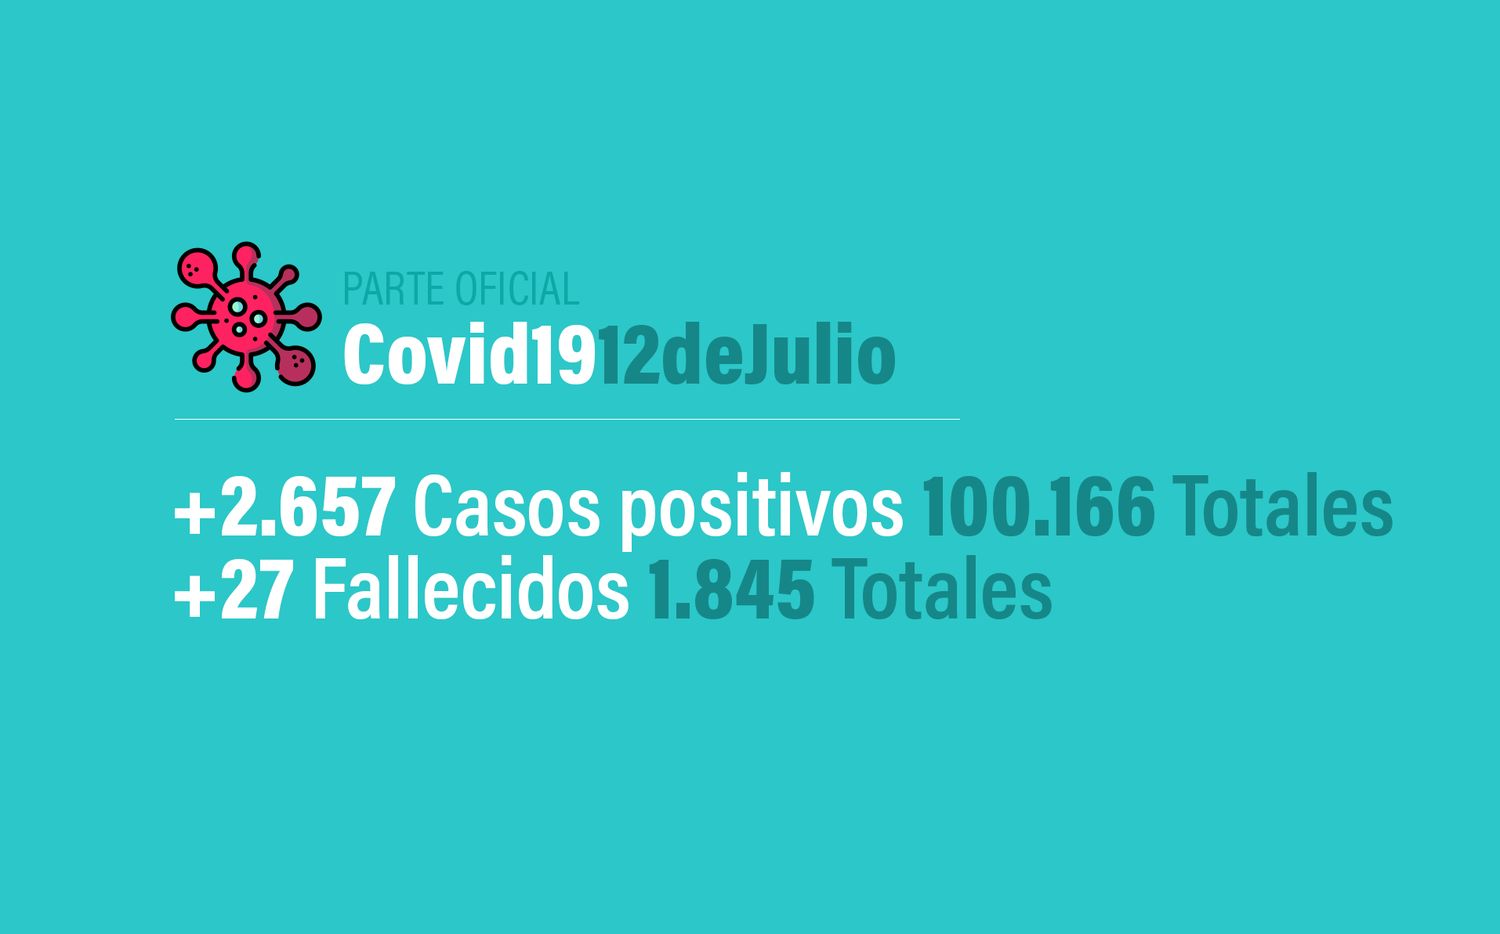 Coronavirus en Argentina: 2657 nuevos casos, 100.166 confirmados y 1845 muertos, al 12 de julio